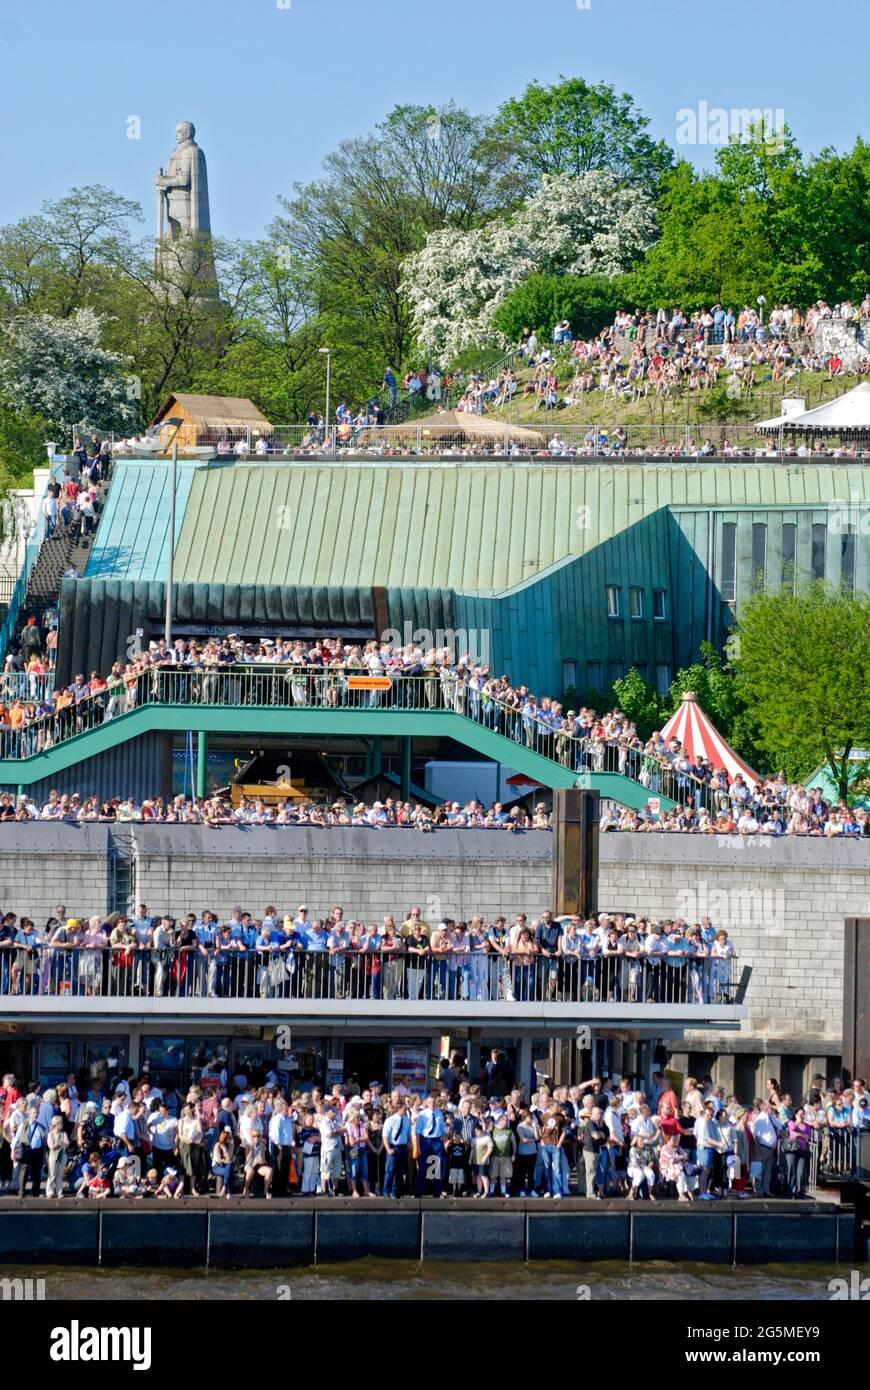 Menschenmassen an den Hamburger Landungsbrücken schauen auf die ELBE und beobachten das traditionelle Schlepperballett. Foto Stock